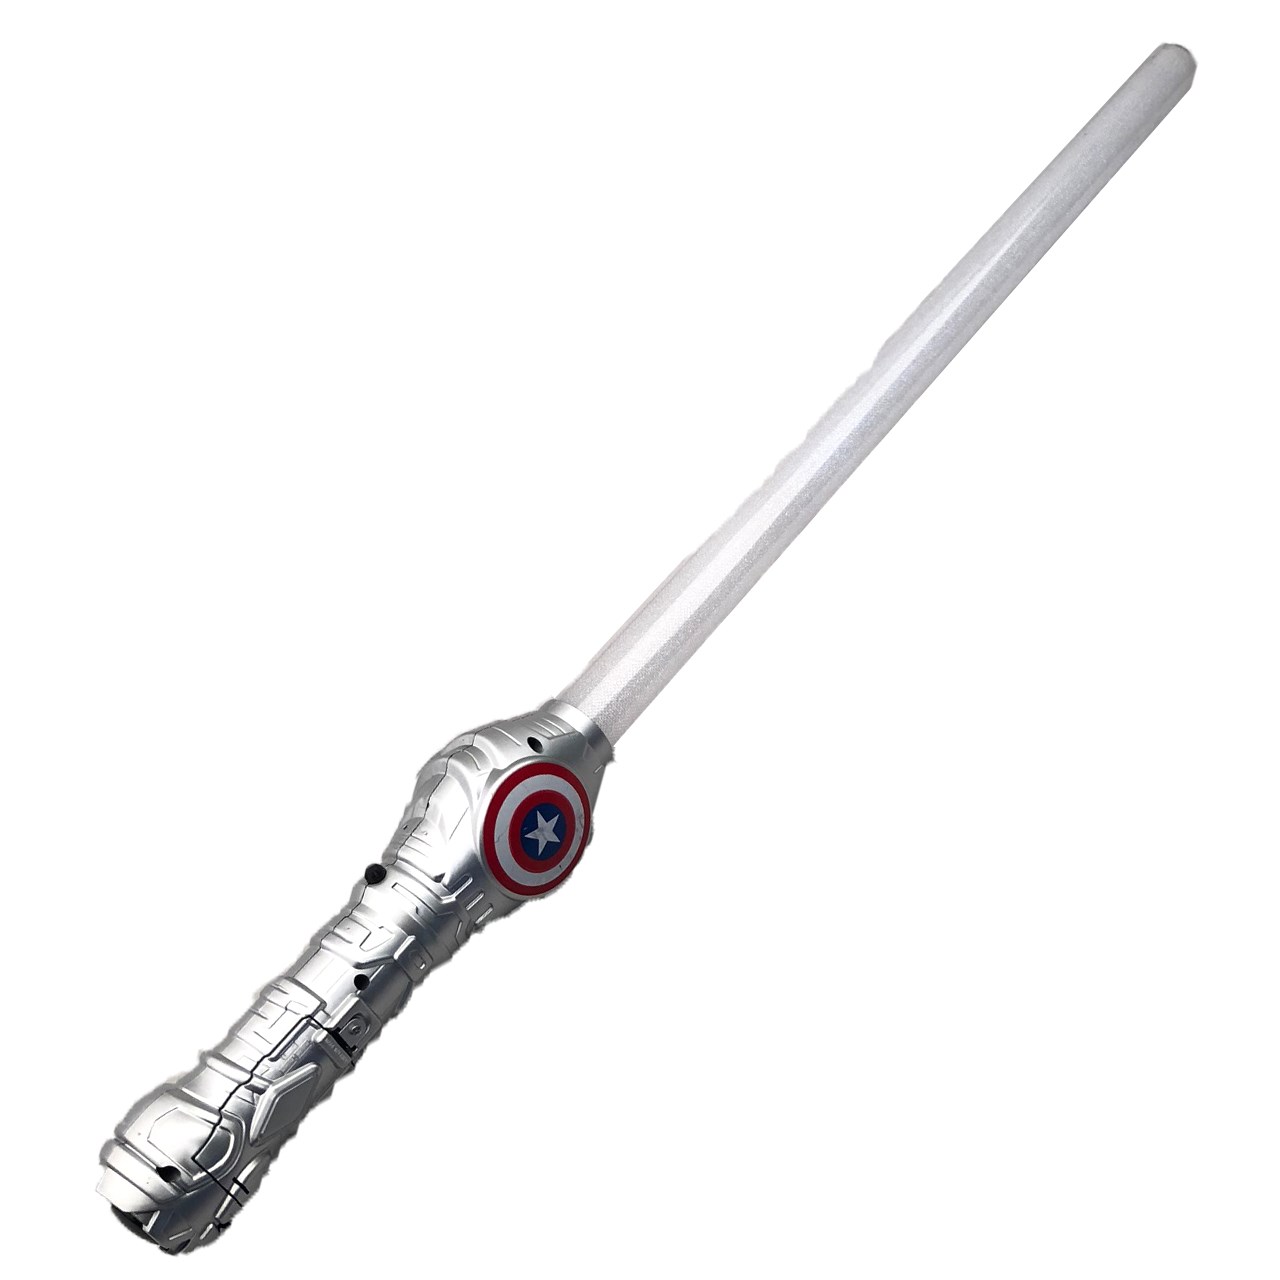 شمشیر اسباب بازی مدل Electronic Laser Sword